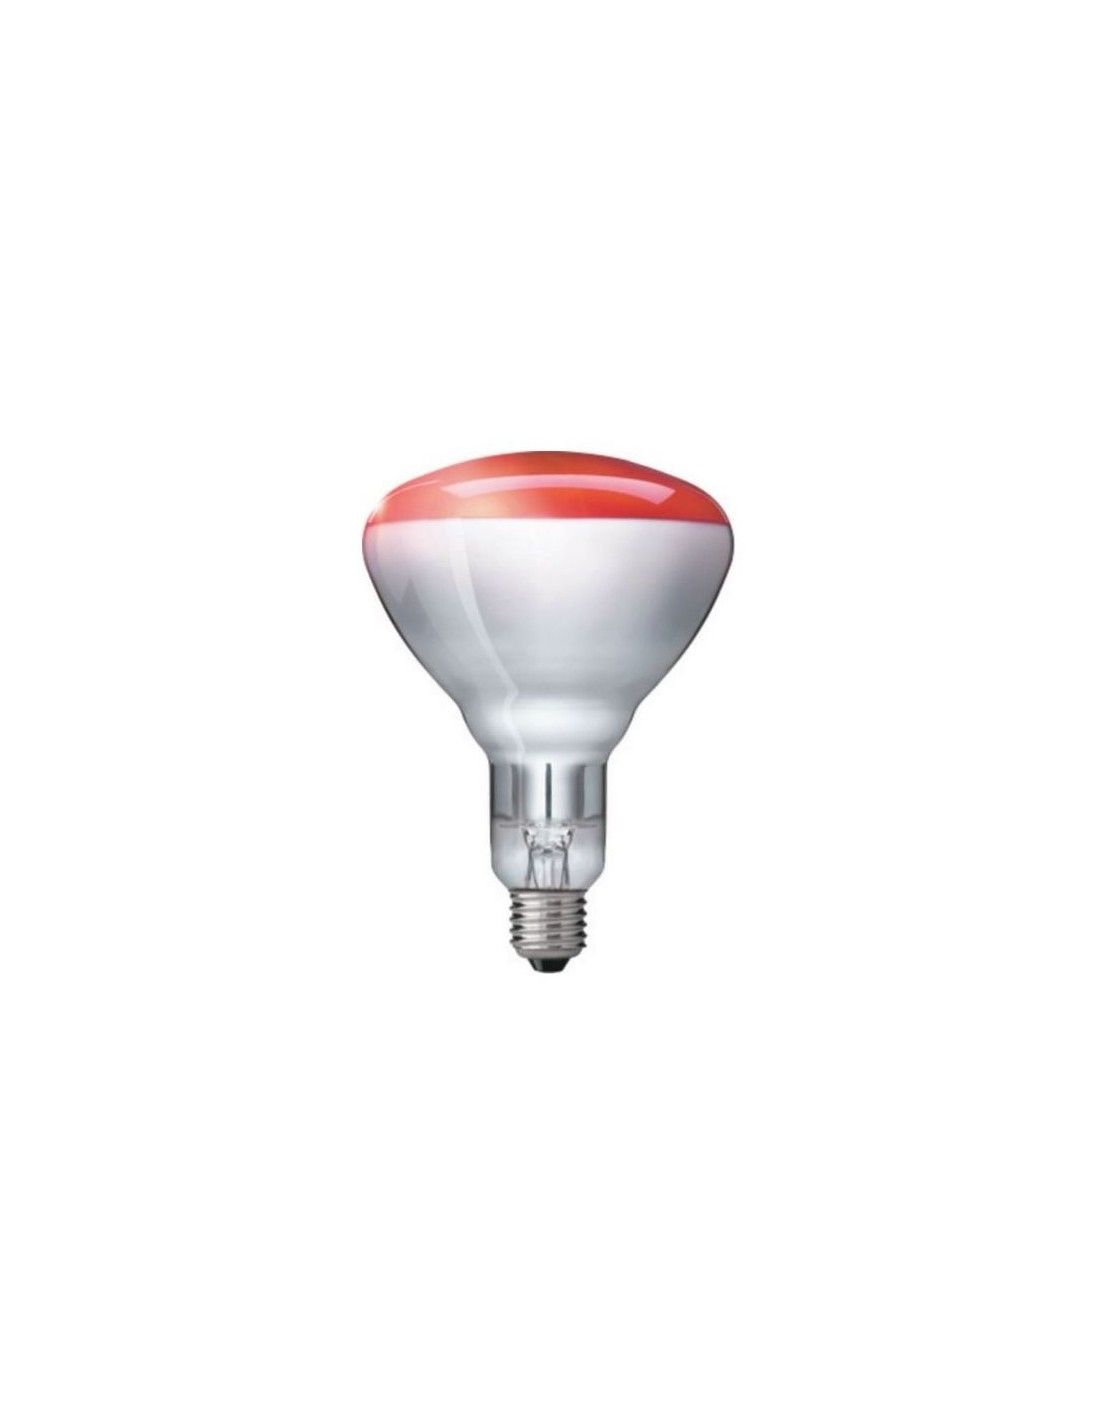 Filtre silicone couleur rouge pour ampoule LED GU10 ou MR16